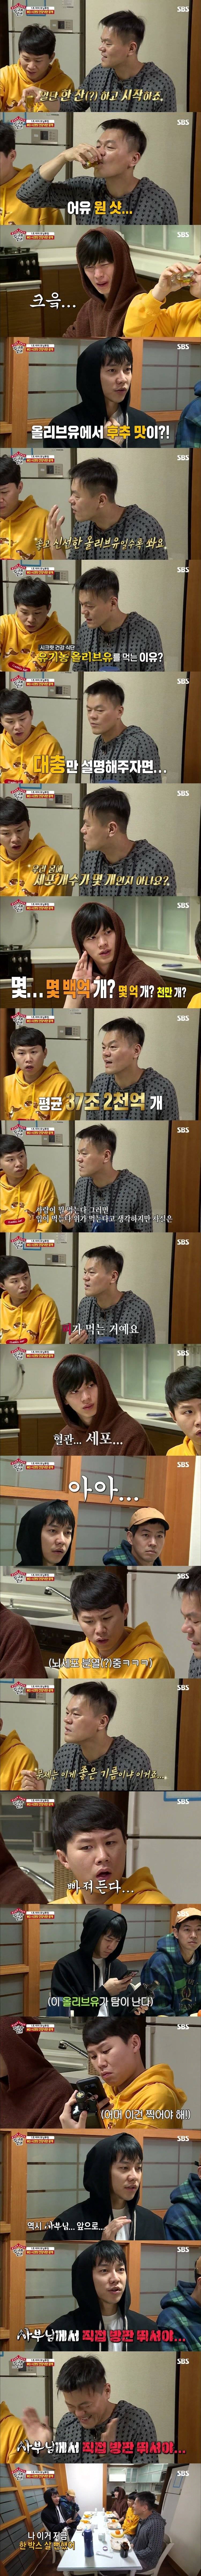 [집사부일체] JYP 박진영의 20년째 실천중인 모닝식단 | 인스티즈